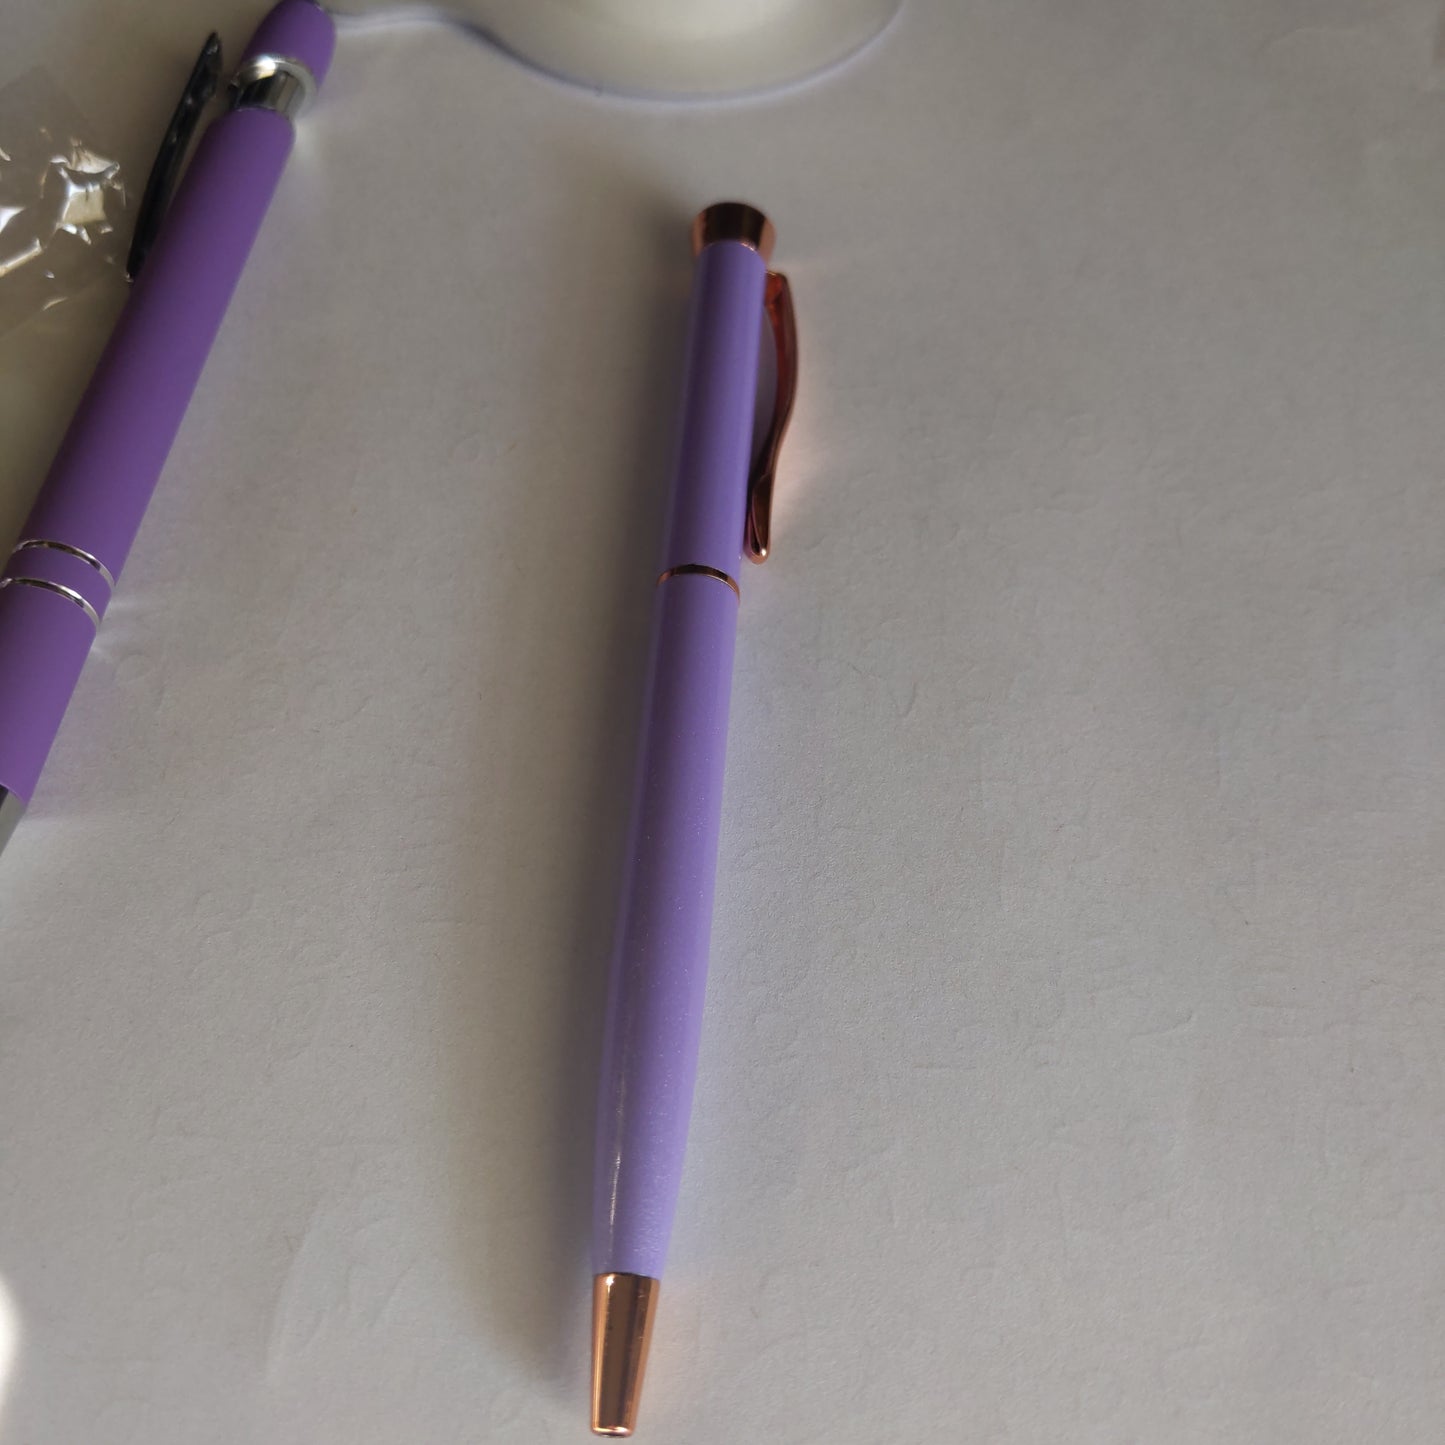 Fancy Purple Writing Pens